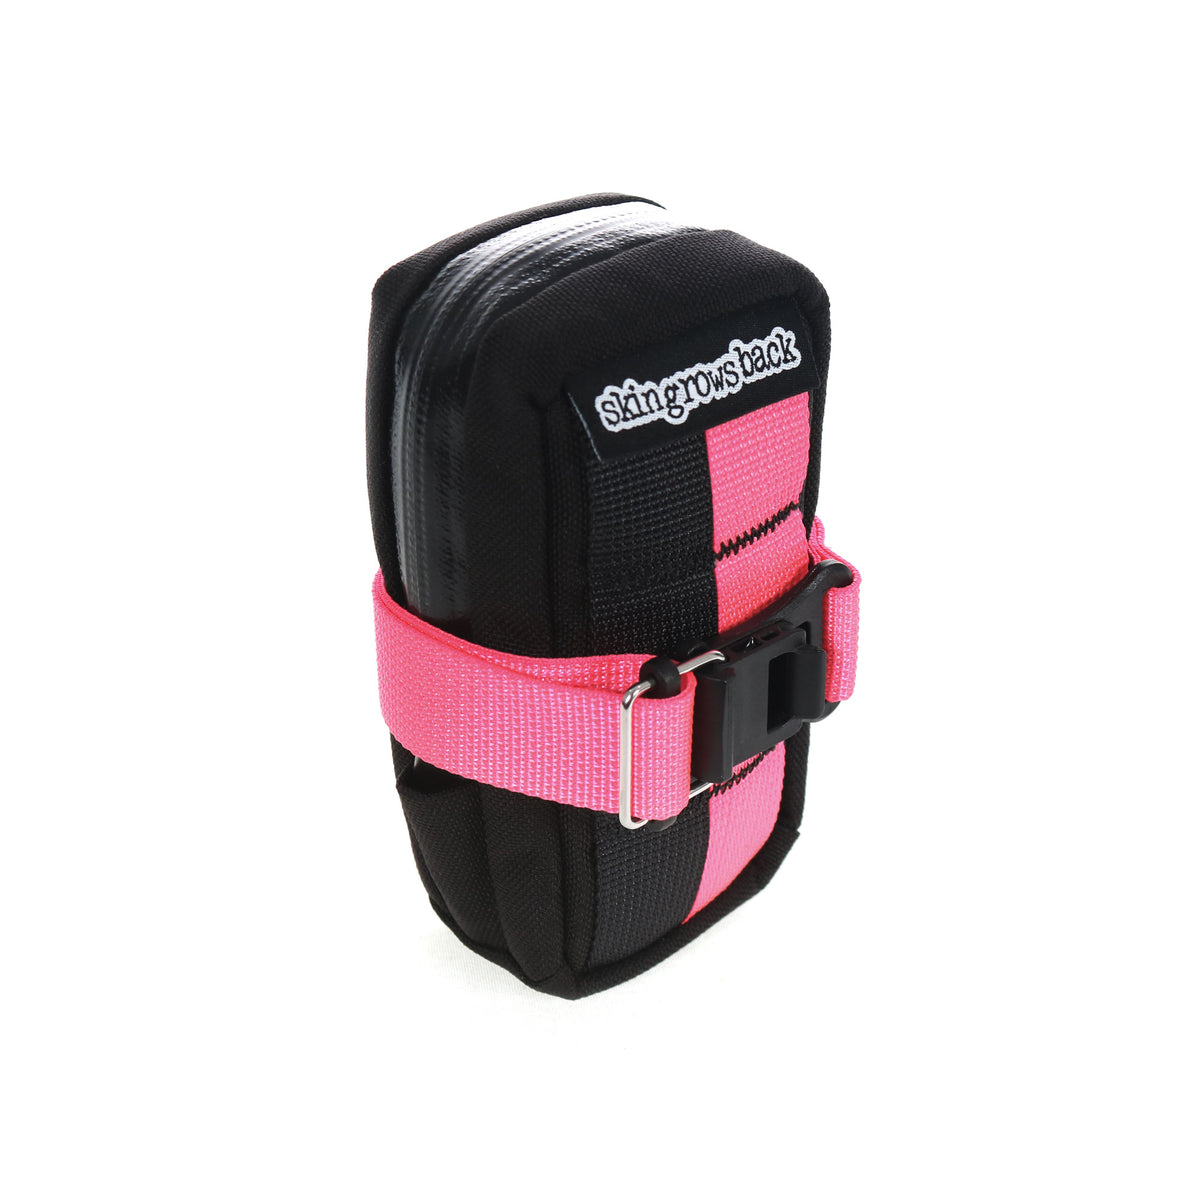 skingrowsback plan b cycling saddle bag neon pink dskingrowsback plan b cycling saddle bag neon pink d